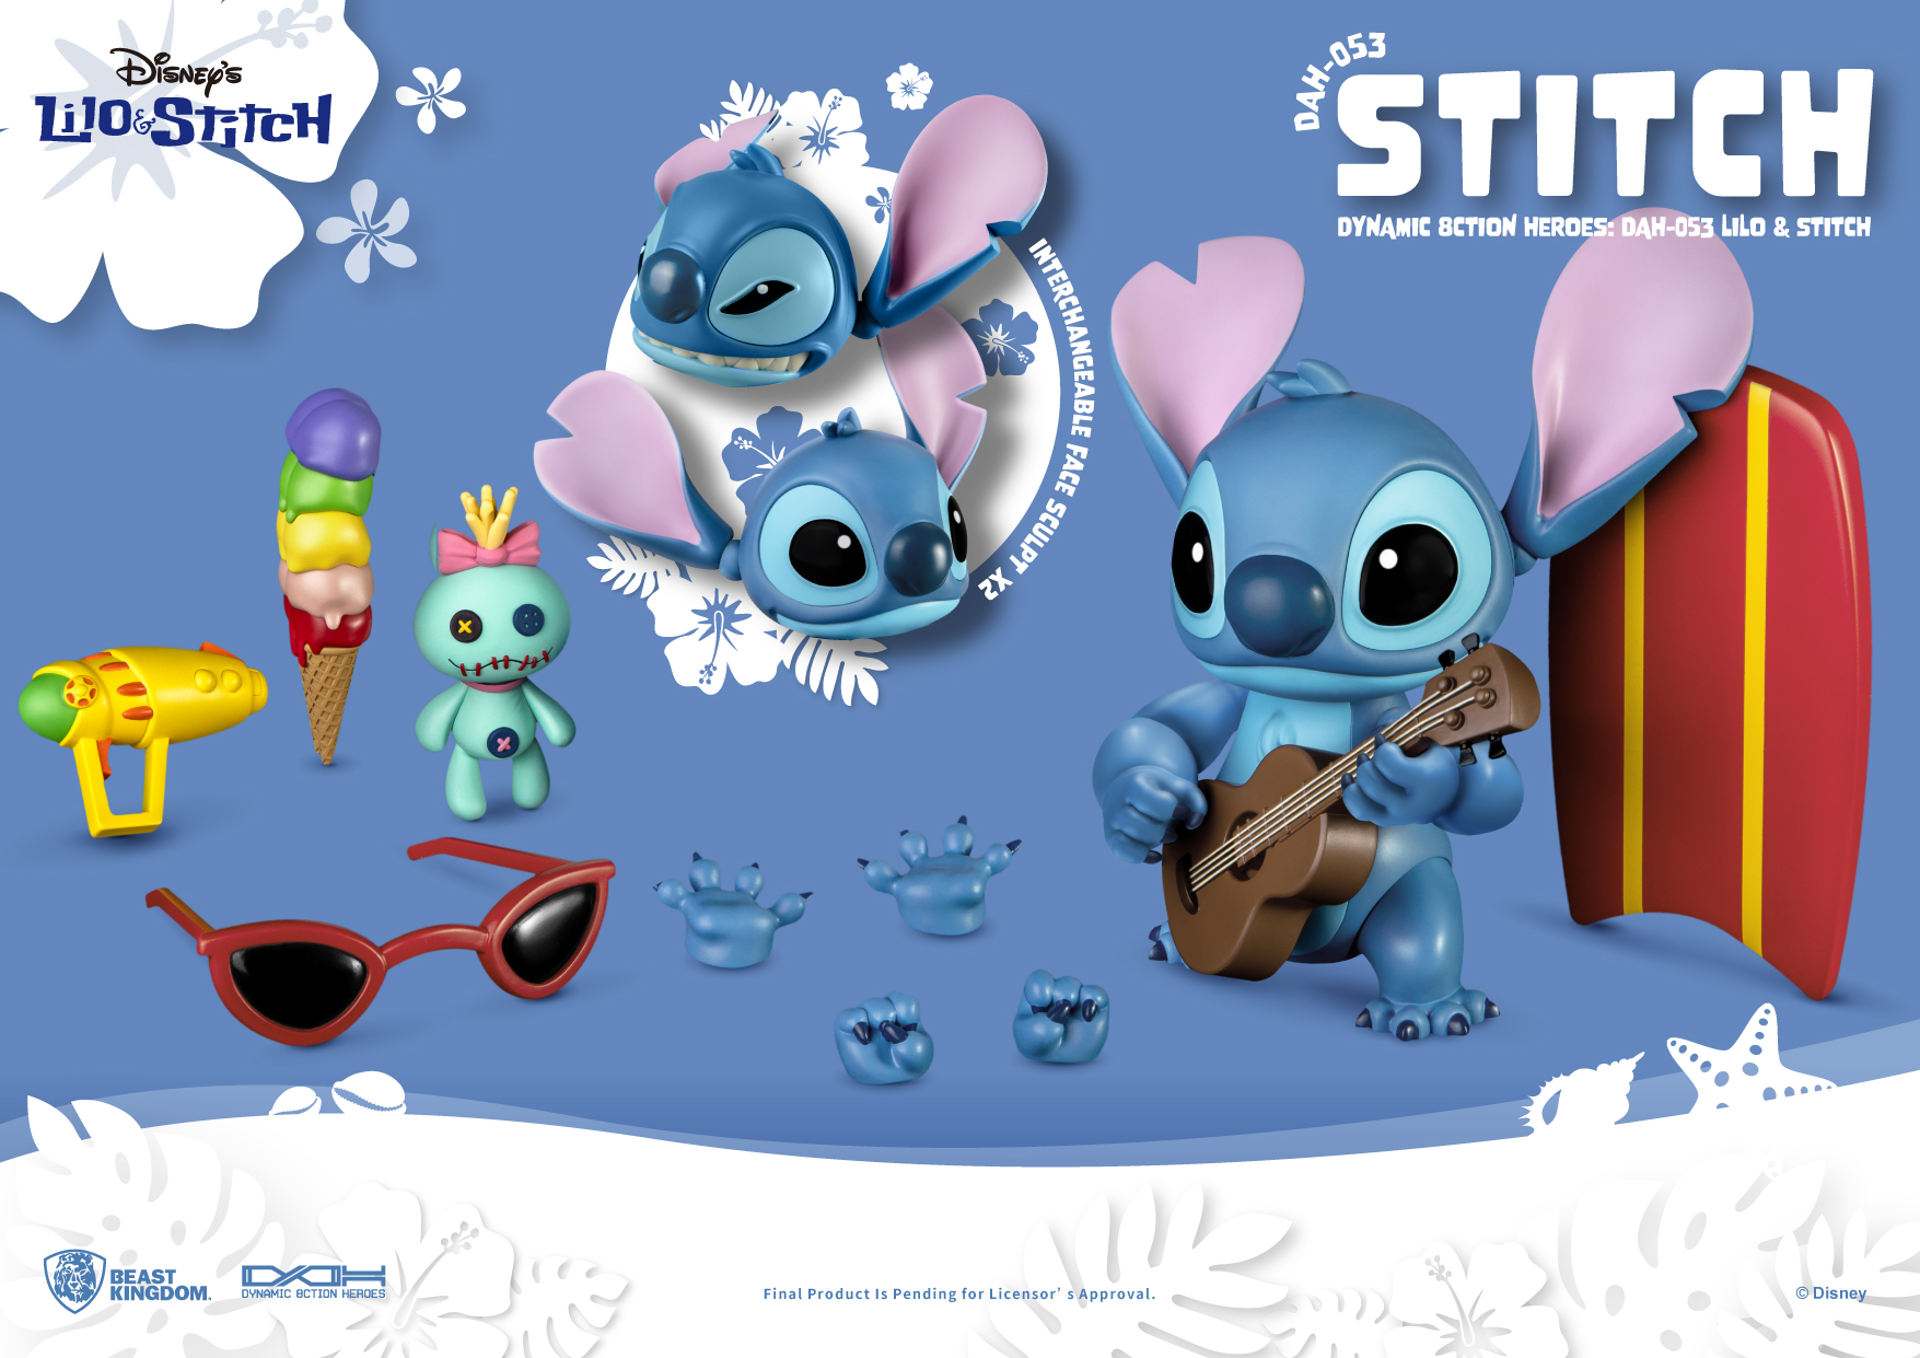 Disney - DAH-053 - Lilo & Stitch - Stitch